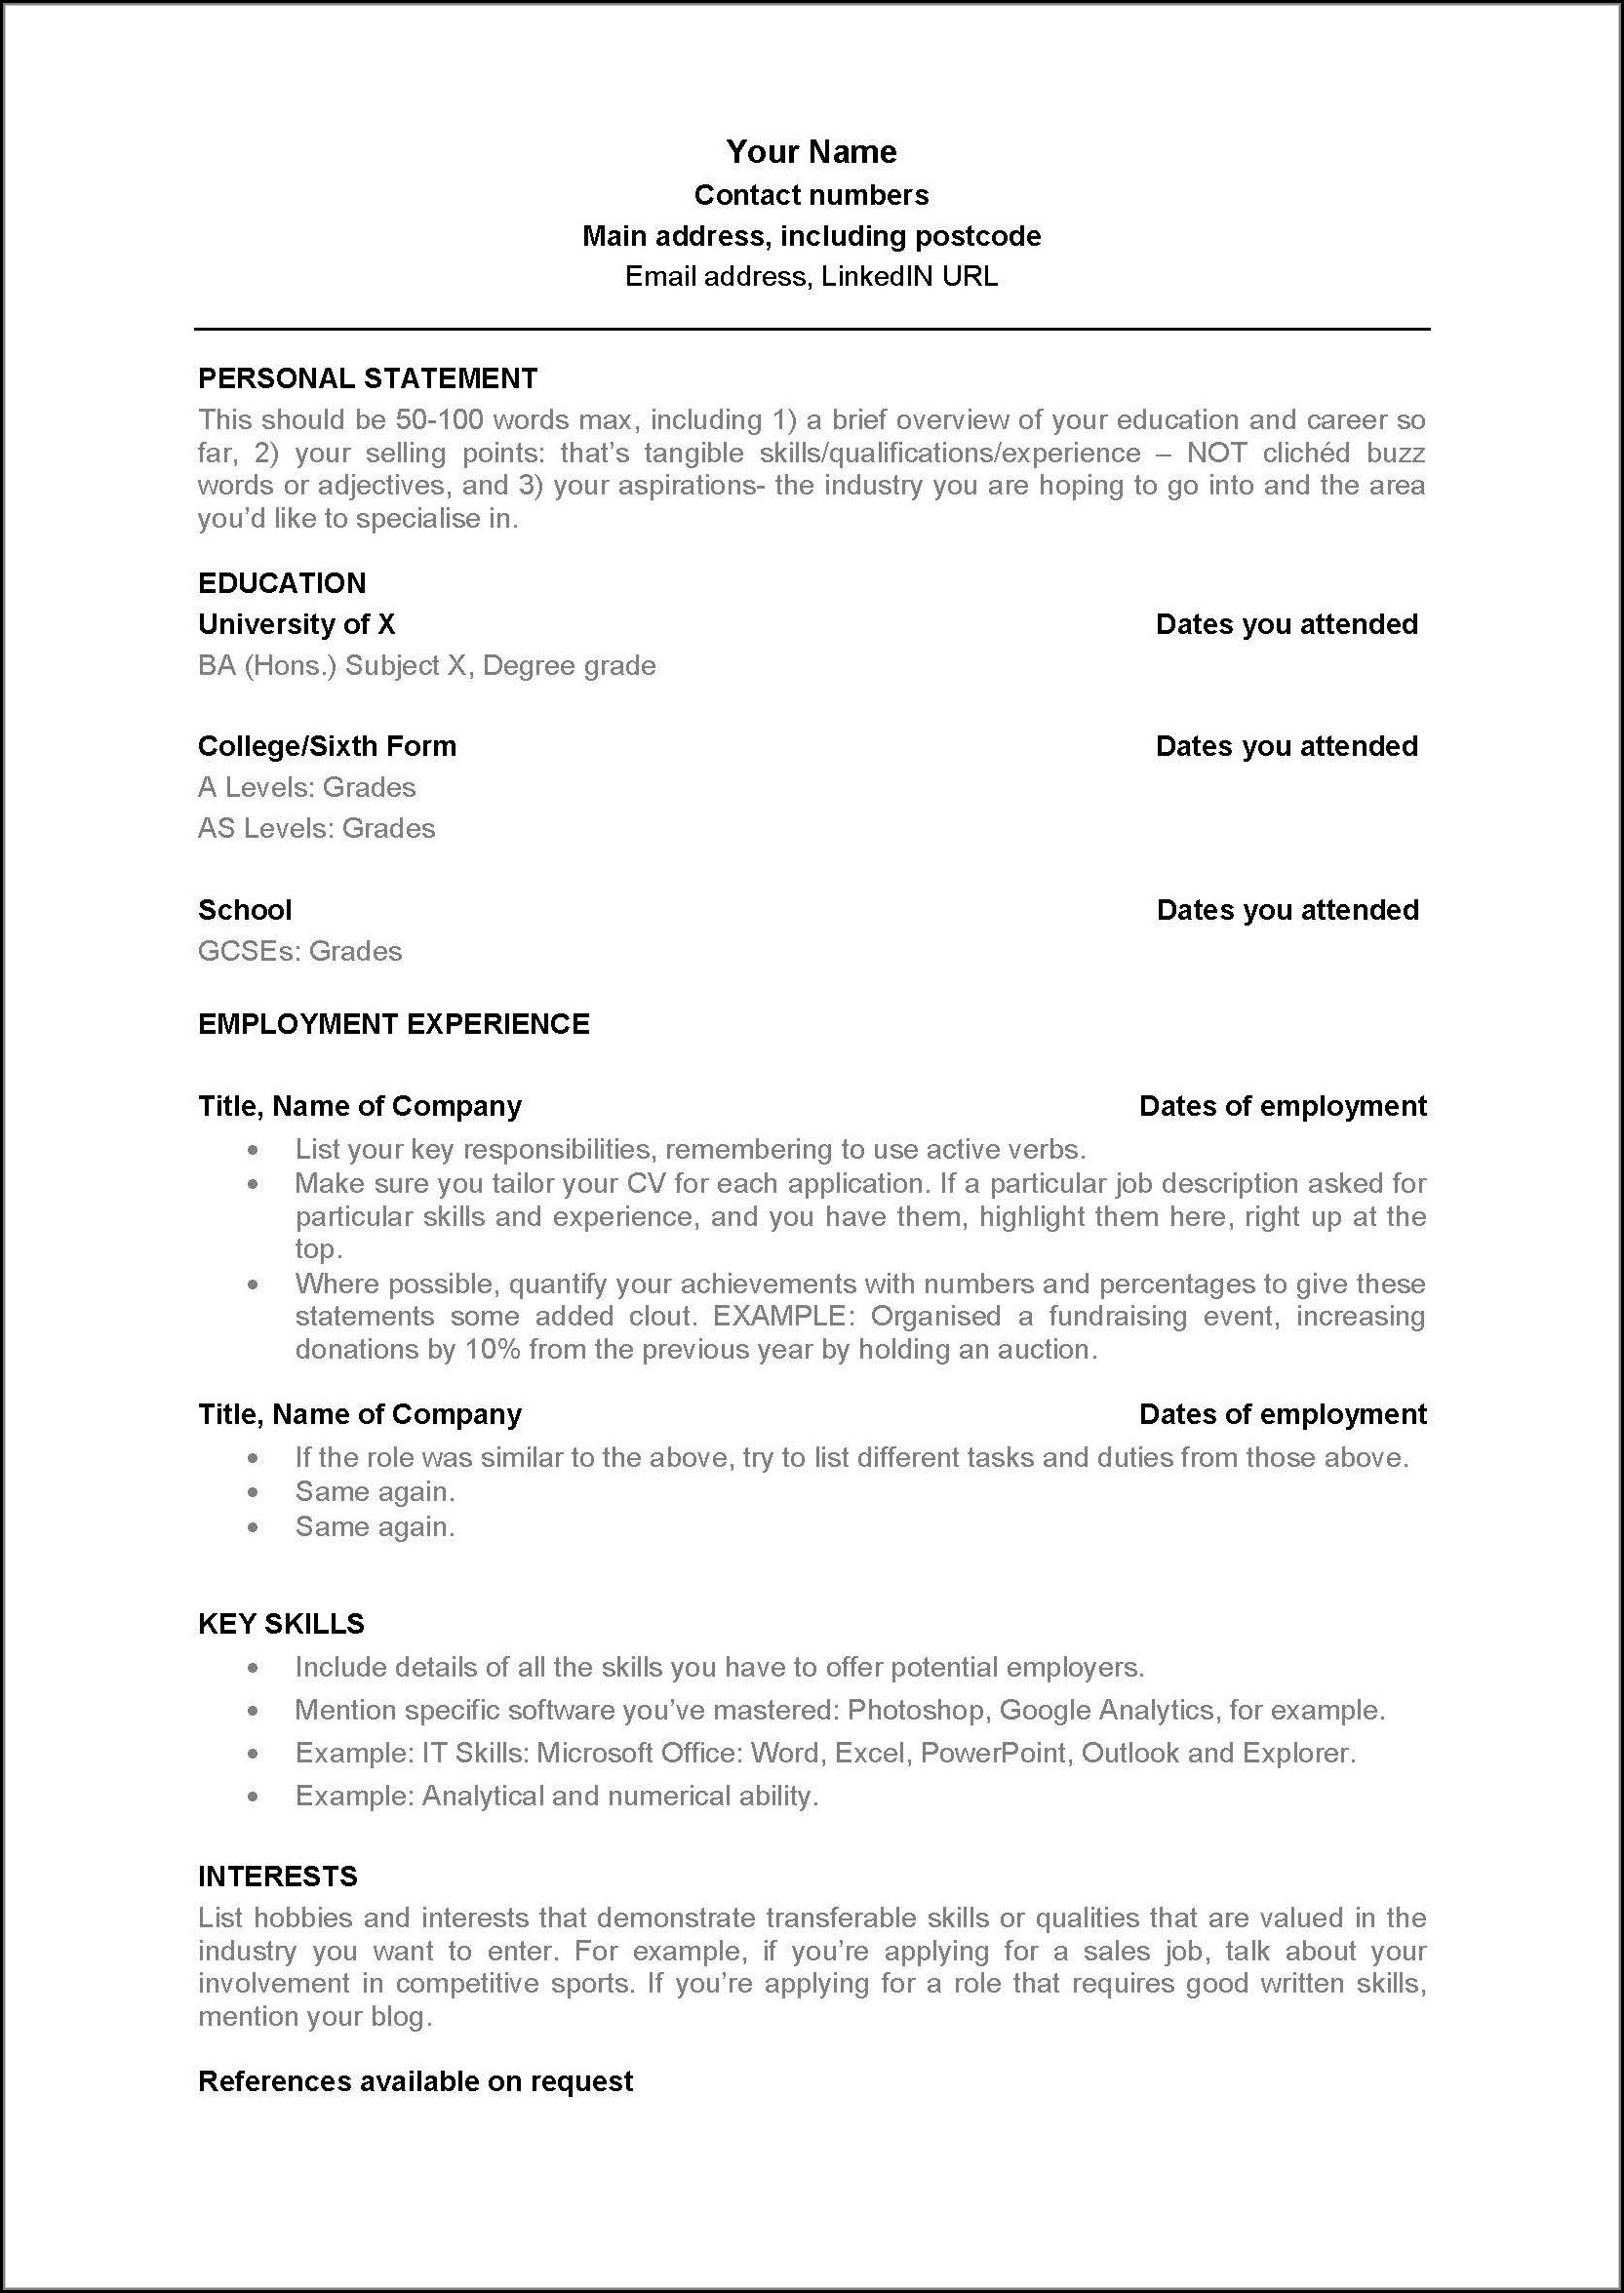 andrew-lacivita-resume-template-pdf-pdf-template